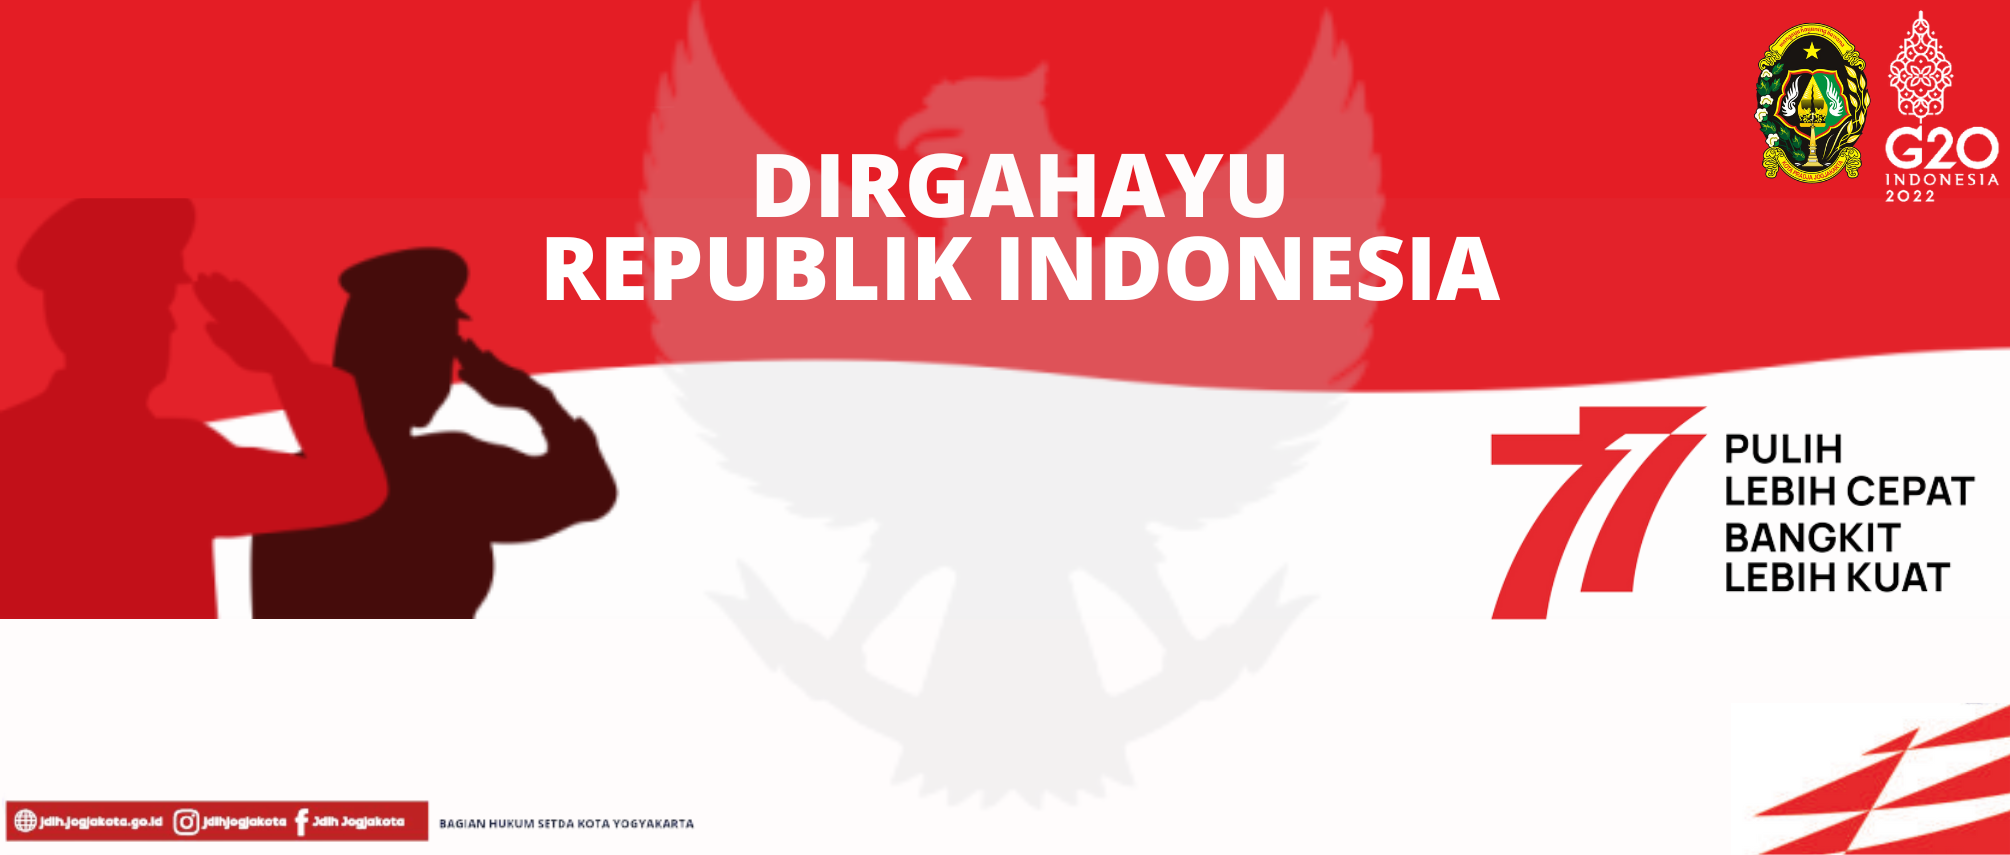 Dirgahayu Republik Indonesia ke-77, Pulih lebih cepat bangkit lebih kuat